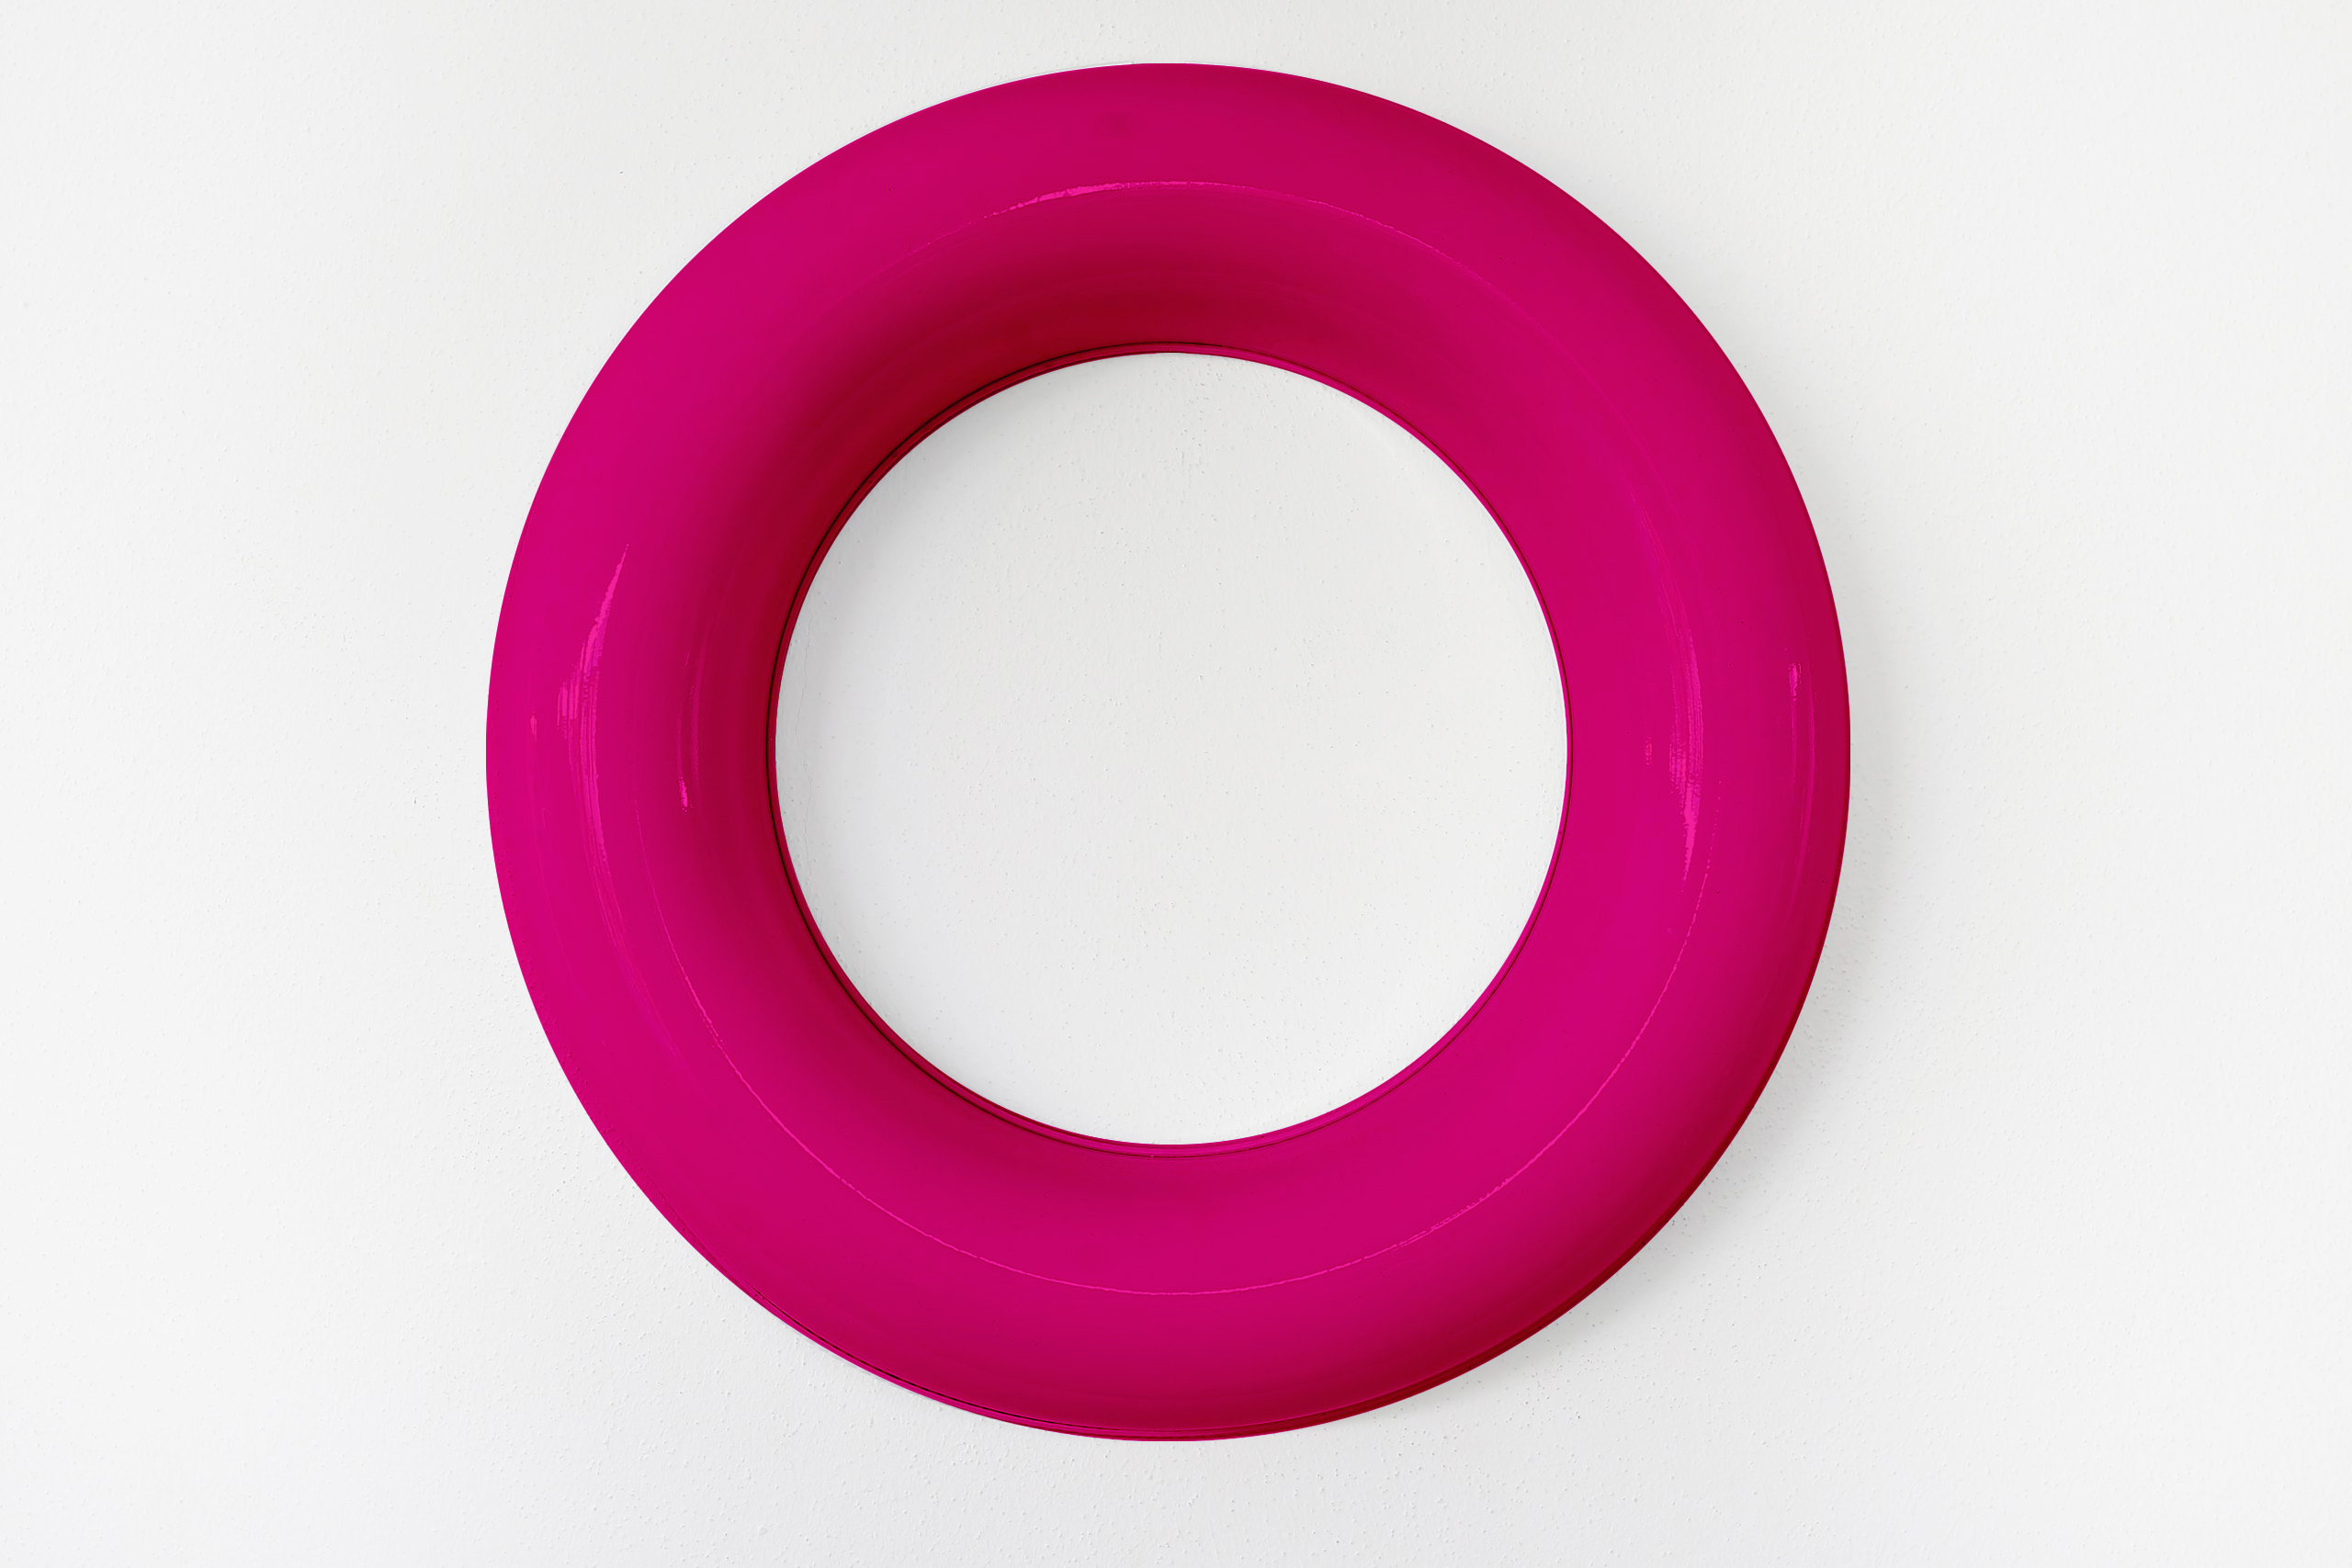 Festschmuck by Magneticas Designkranz Pink lackiert, Durchmesser 30 cm (1-tlg.)